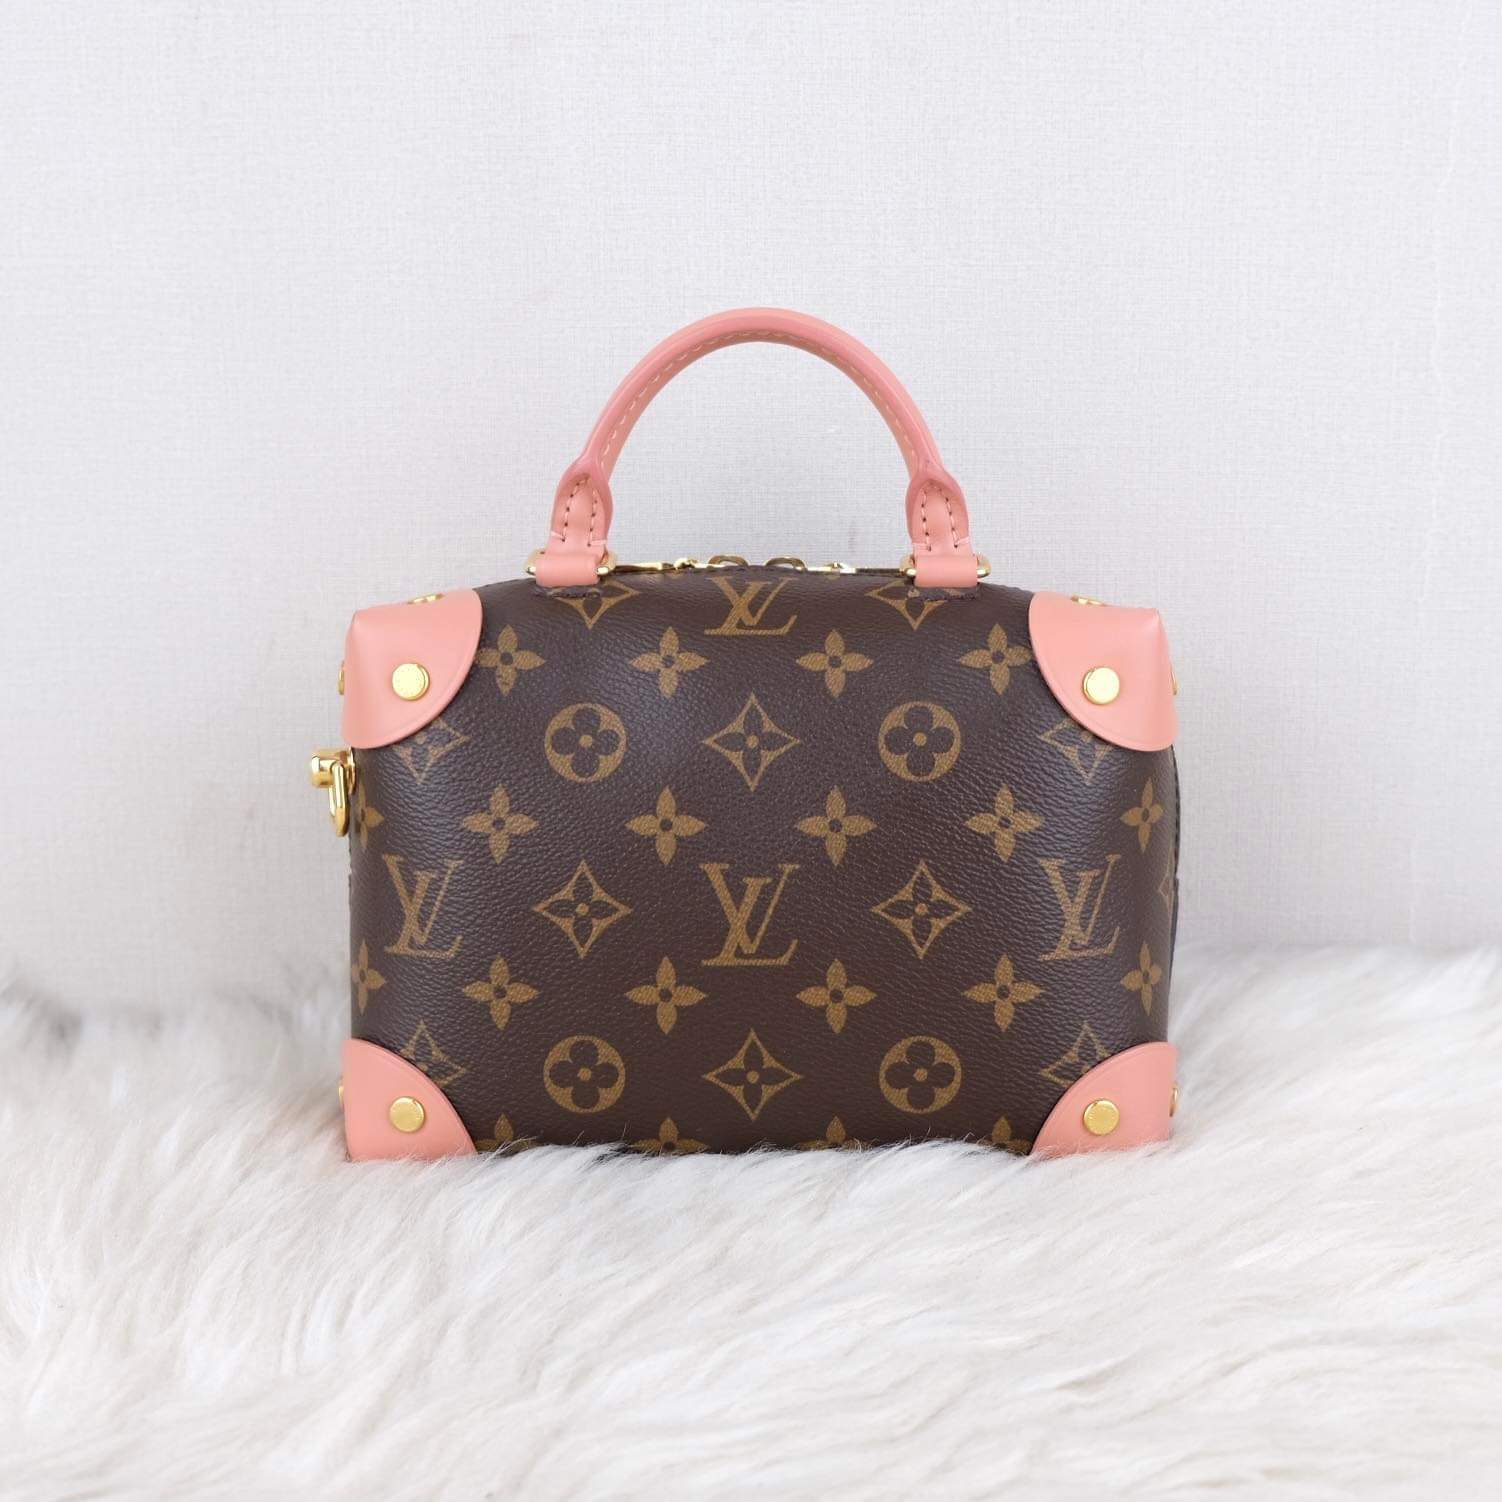 Louis Vuitton lv clutch purse evening petite Malle bag monogram